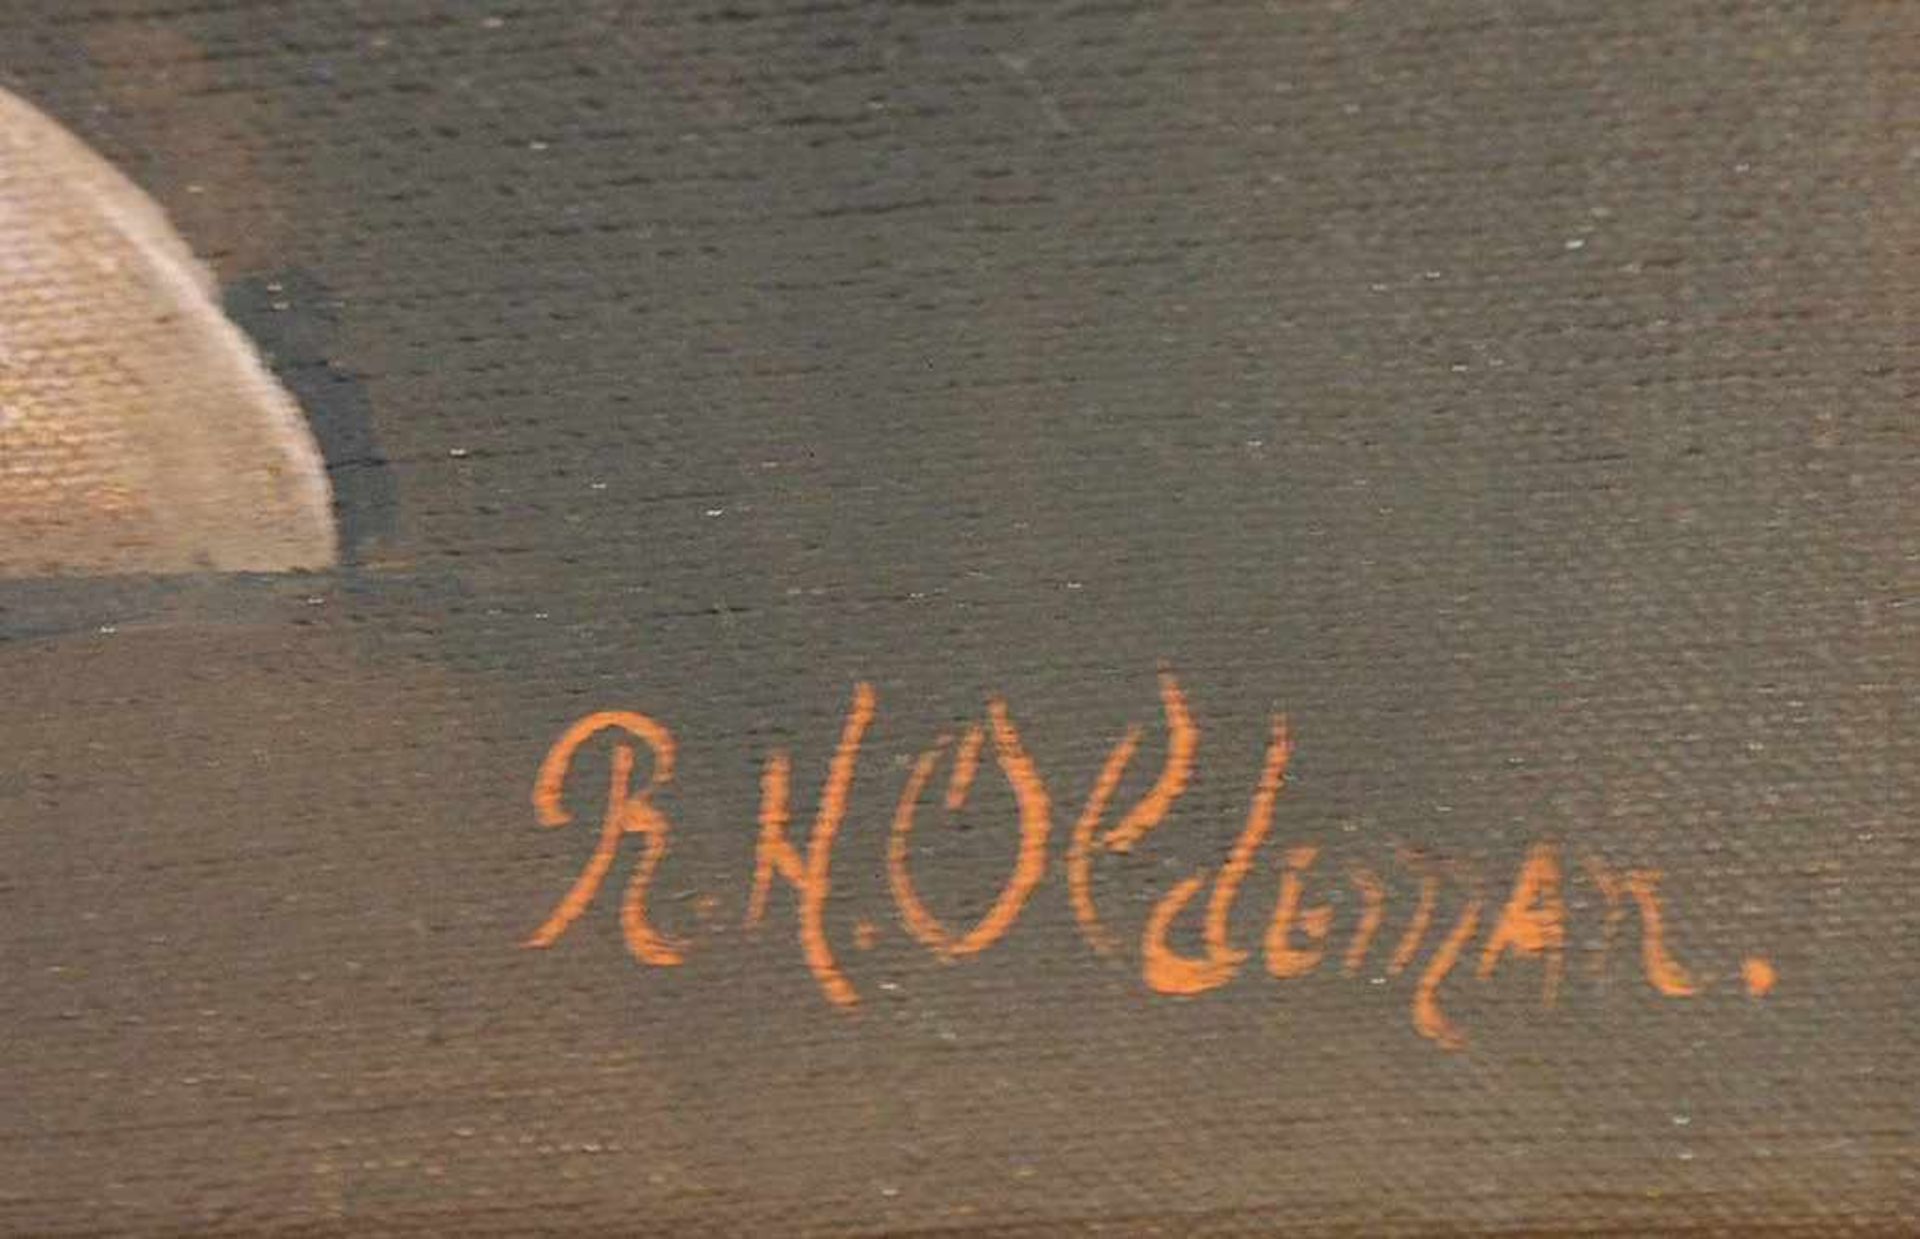 OLDEMAN, Rudolf Hendrik1902-1964BlumenstillebenÖl auf Leinwand, signiert unten rechts, 59 x 49 cm, - Bild 3 aus 3